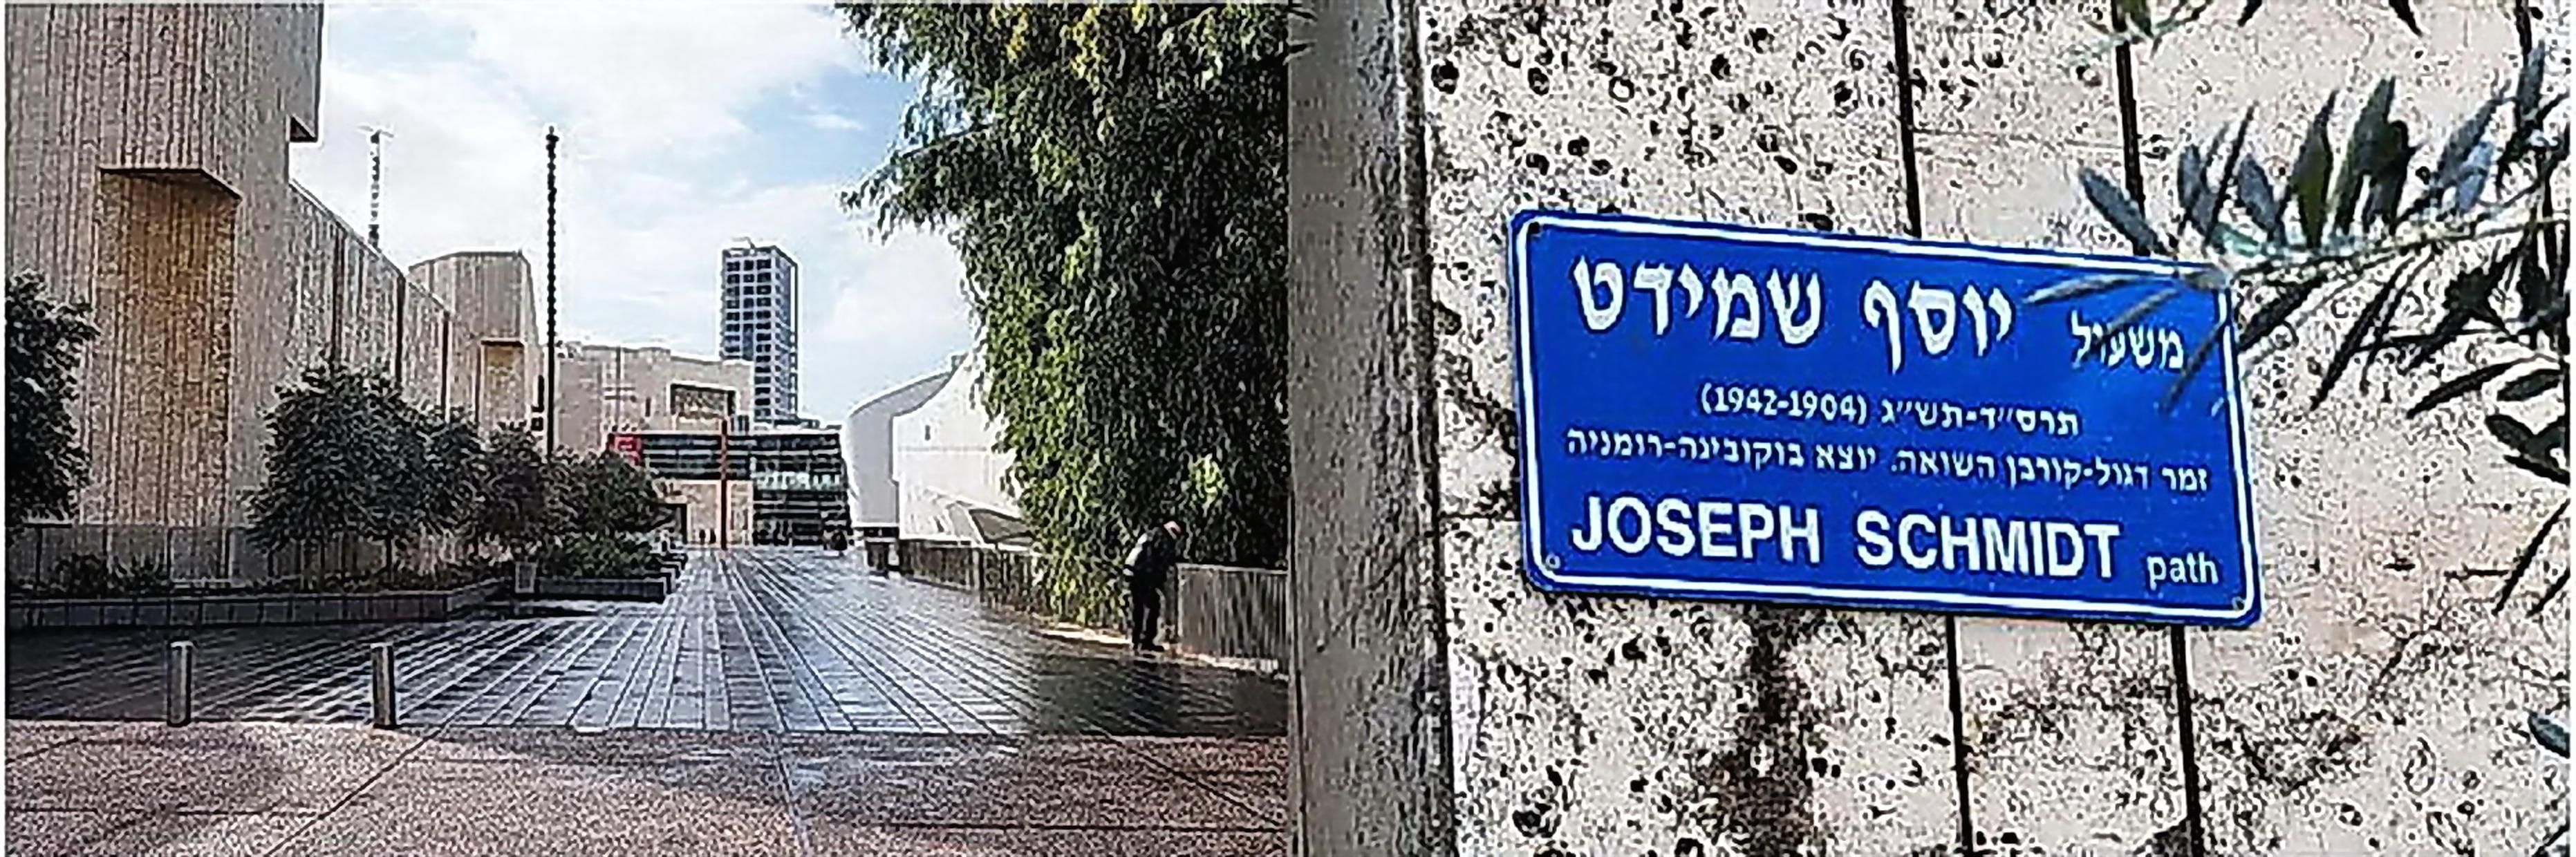 <b>Аллея Йозефа Шмидта в Тель-Авиве. Слева библиотека «Бейт Ариела», справа Музей изобразительных искусств, впереди виднеется здание Оперы</b>